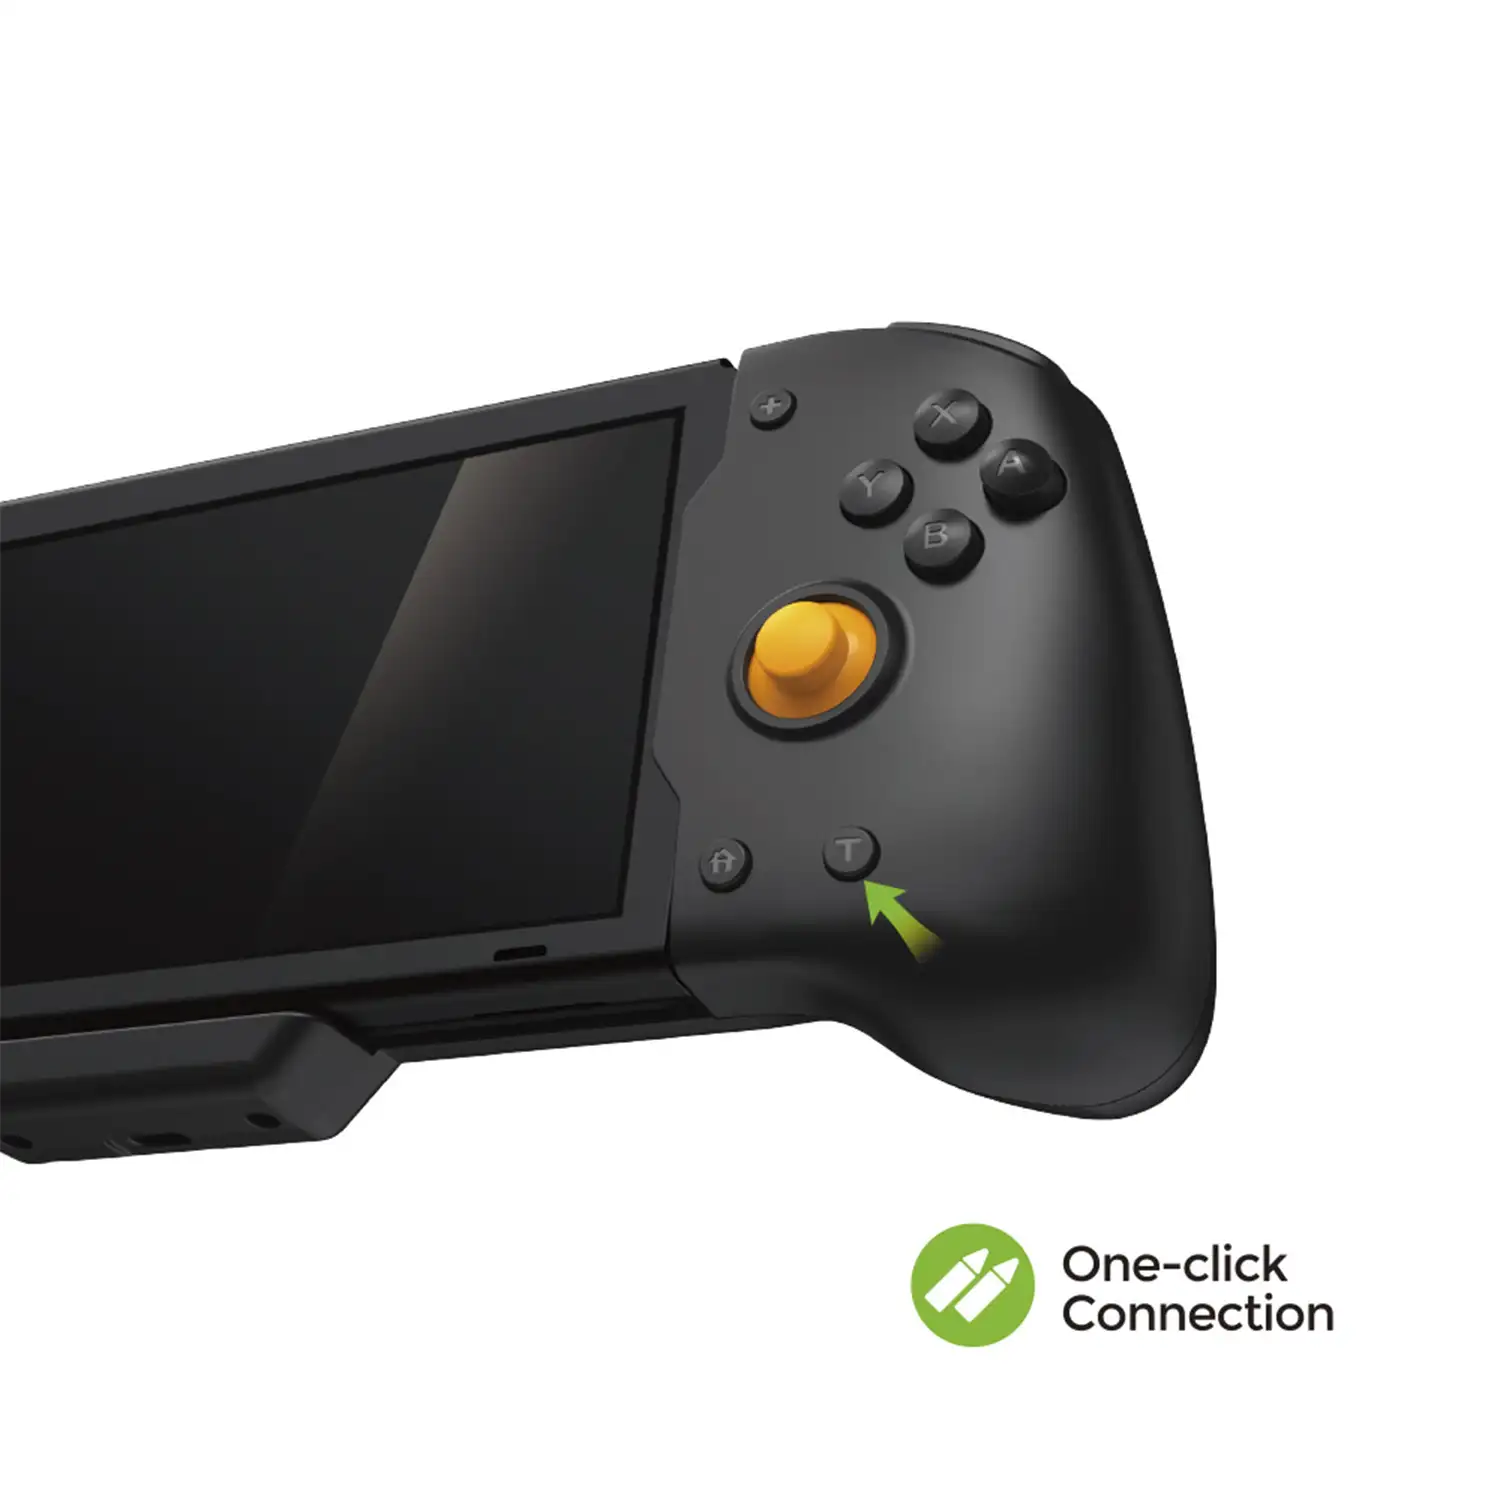 Mando Grip compatible con Nintendo Switch TNS-0160B1. Motores de vibración, sensores giroscópicos, alta ergonomía. Incluye funda semirígida.